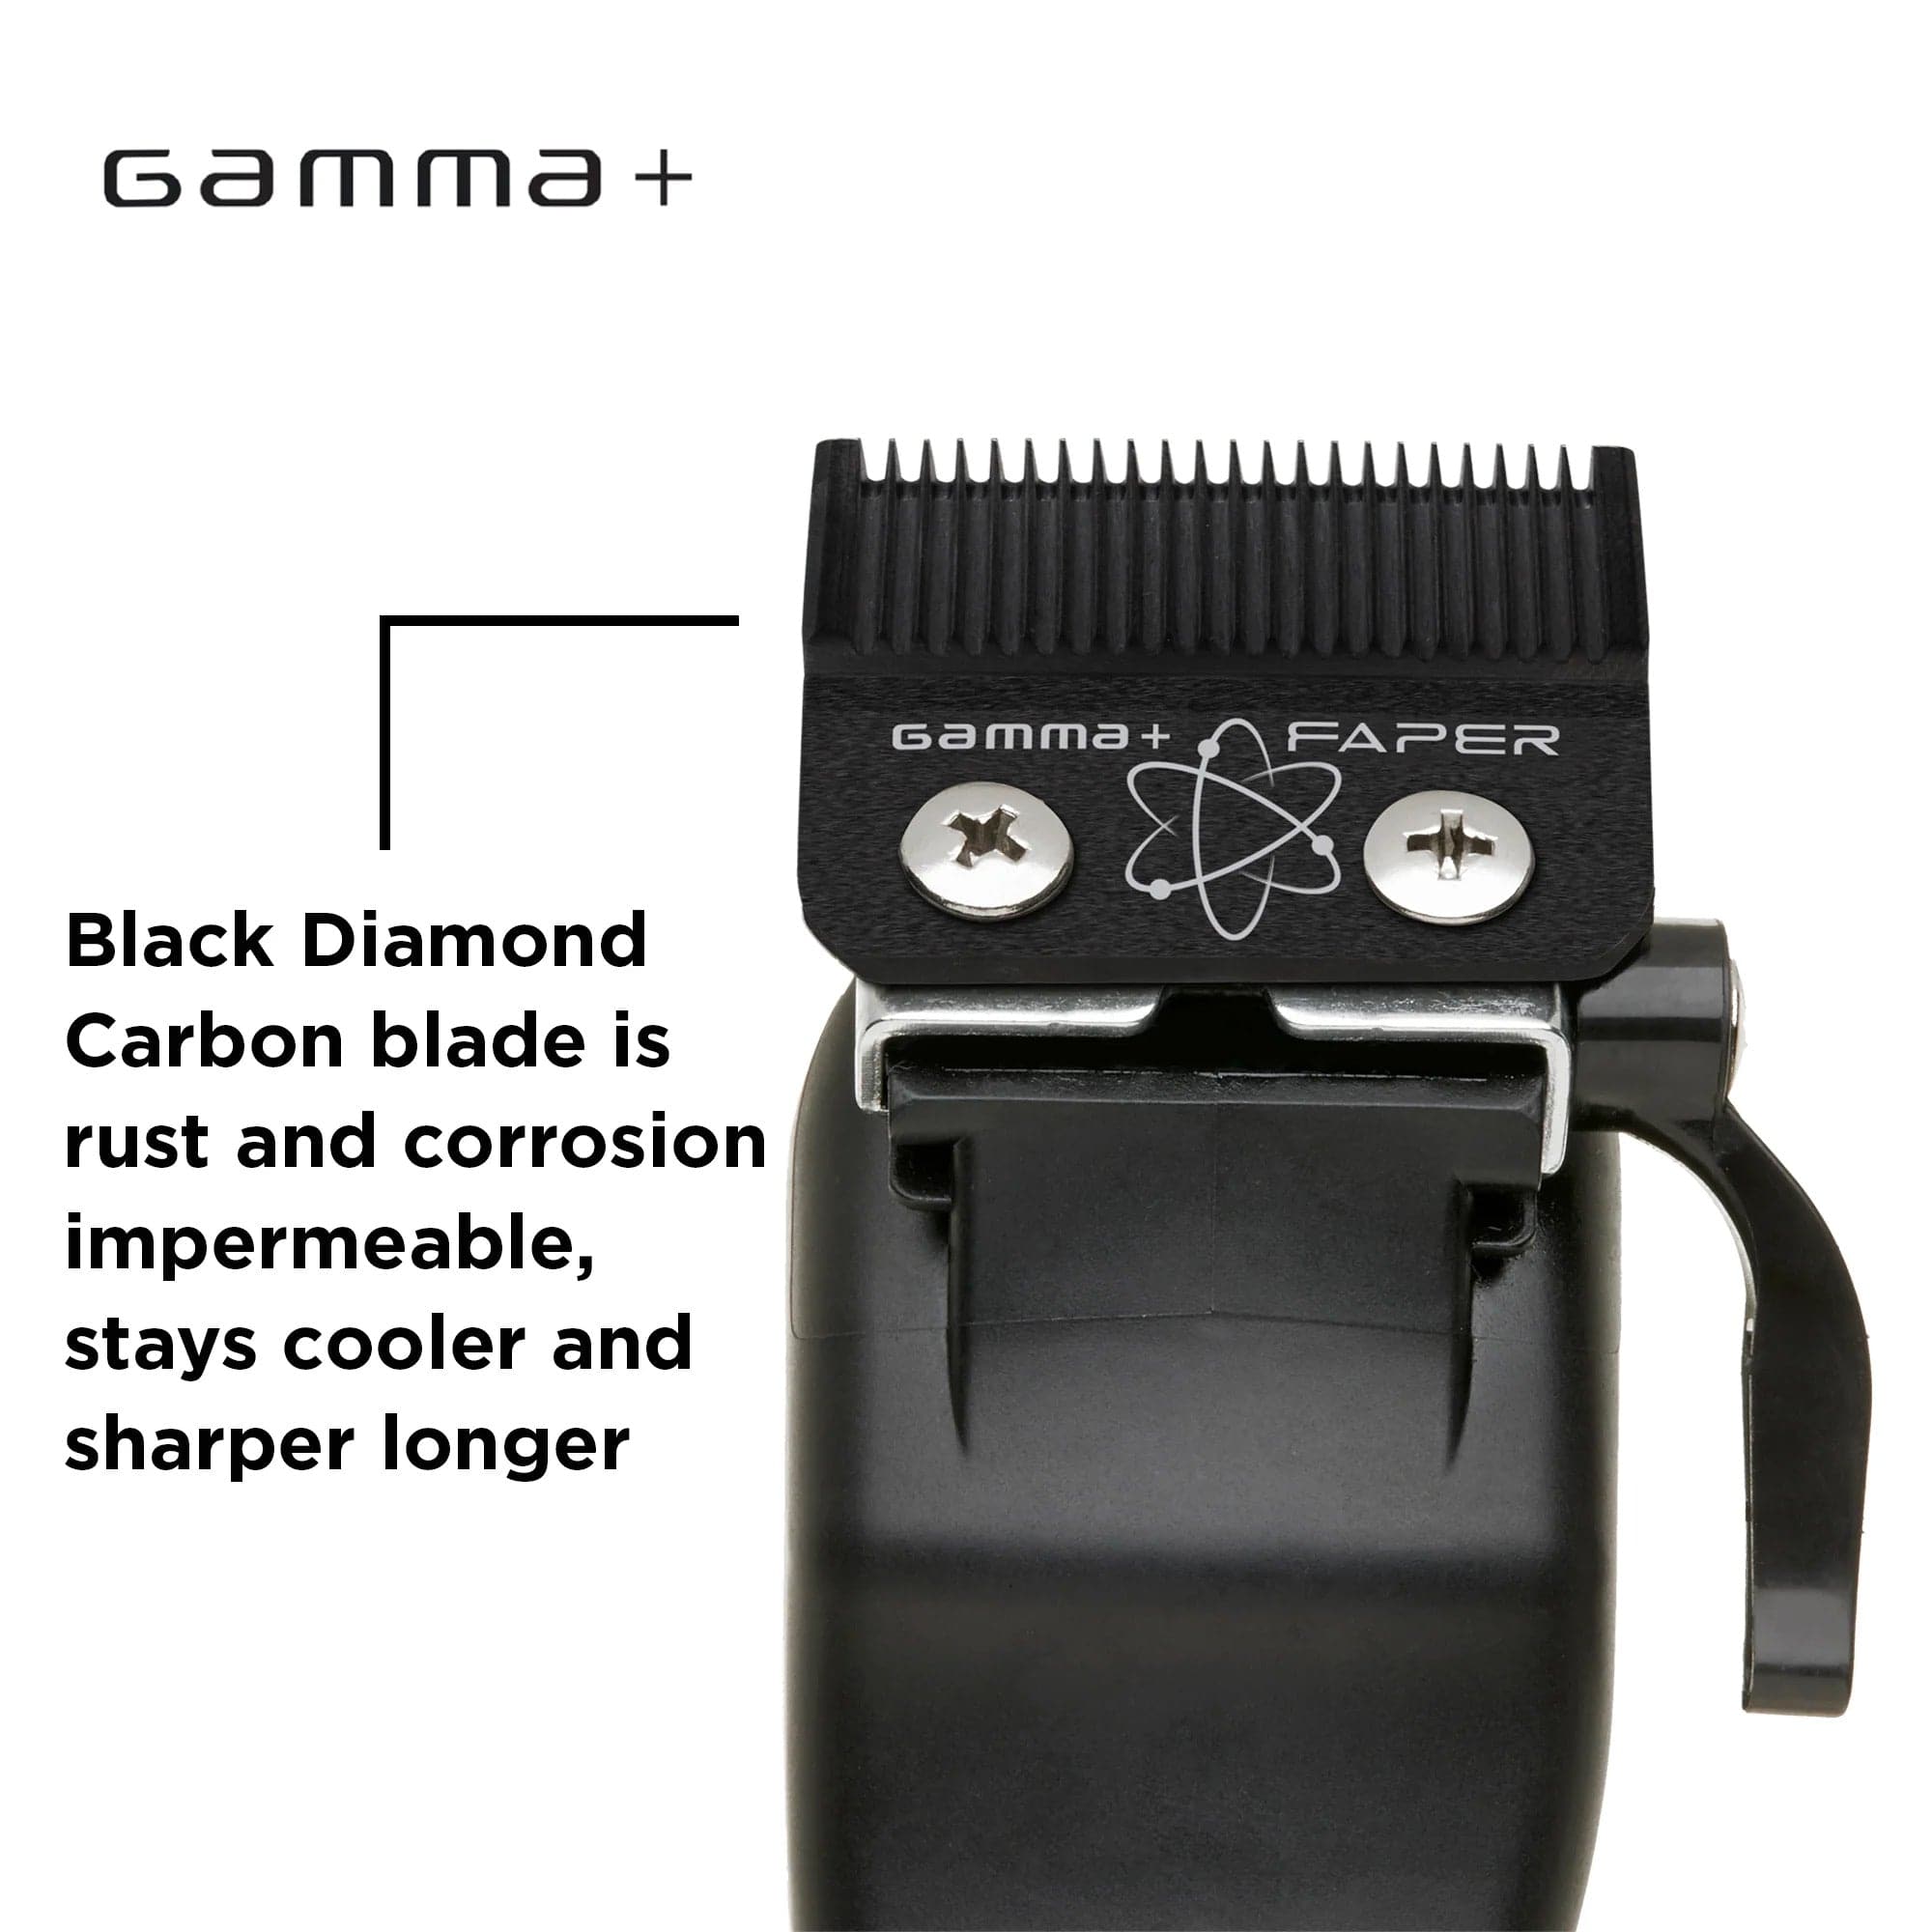 Gamma+ - Faper DLC Black Diamond Fixed Blade For Clipper